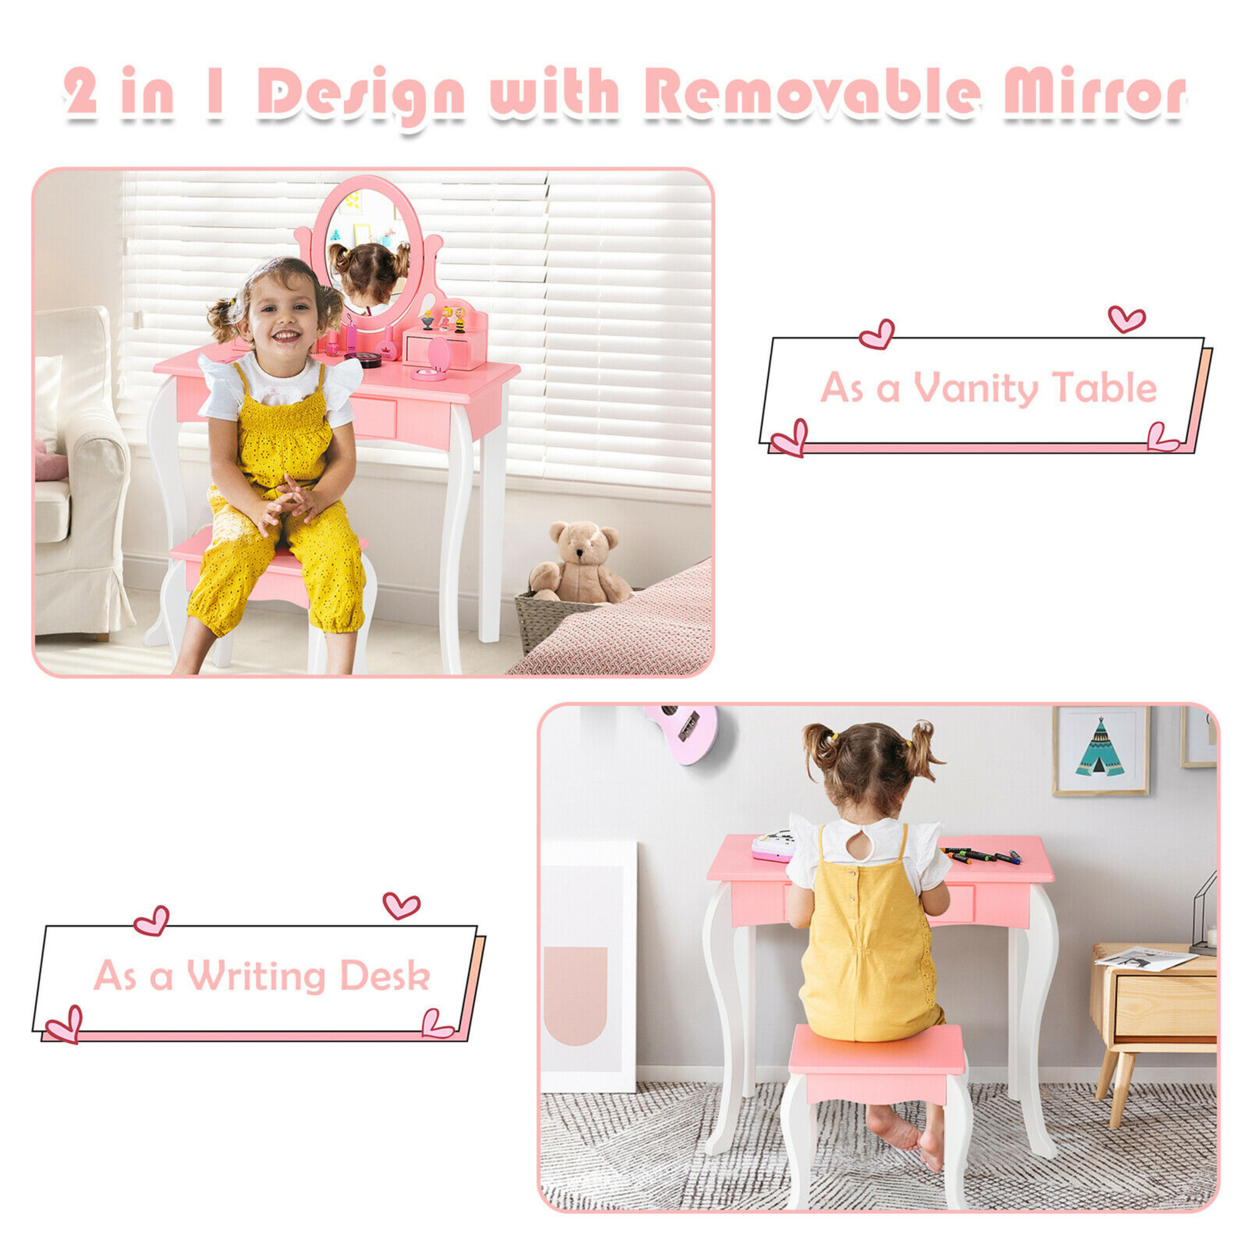 Kids Vanity Princess Makeup Dressing Table Stool Set W/ Mirror Drawer - White